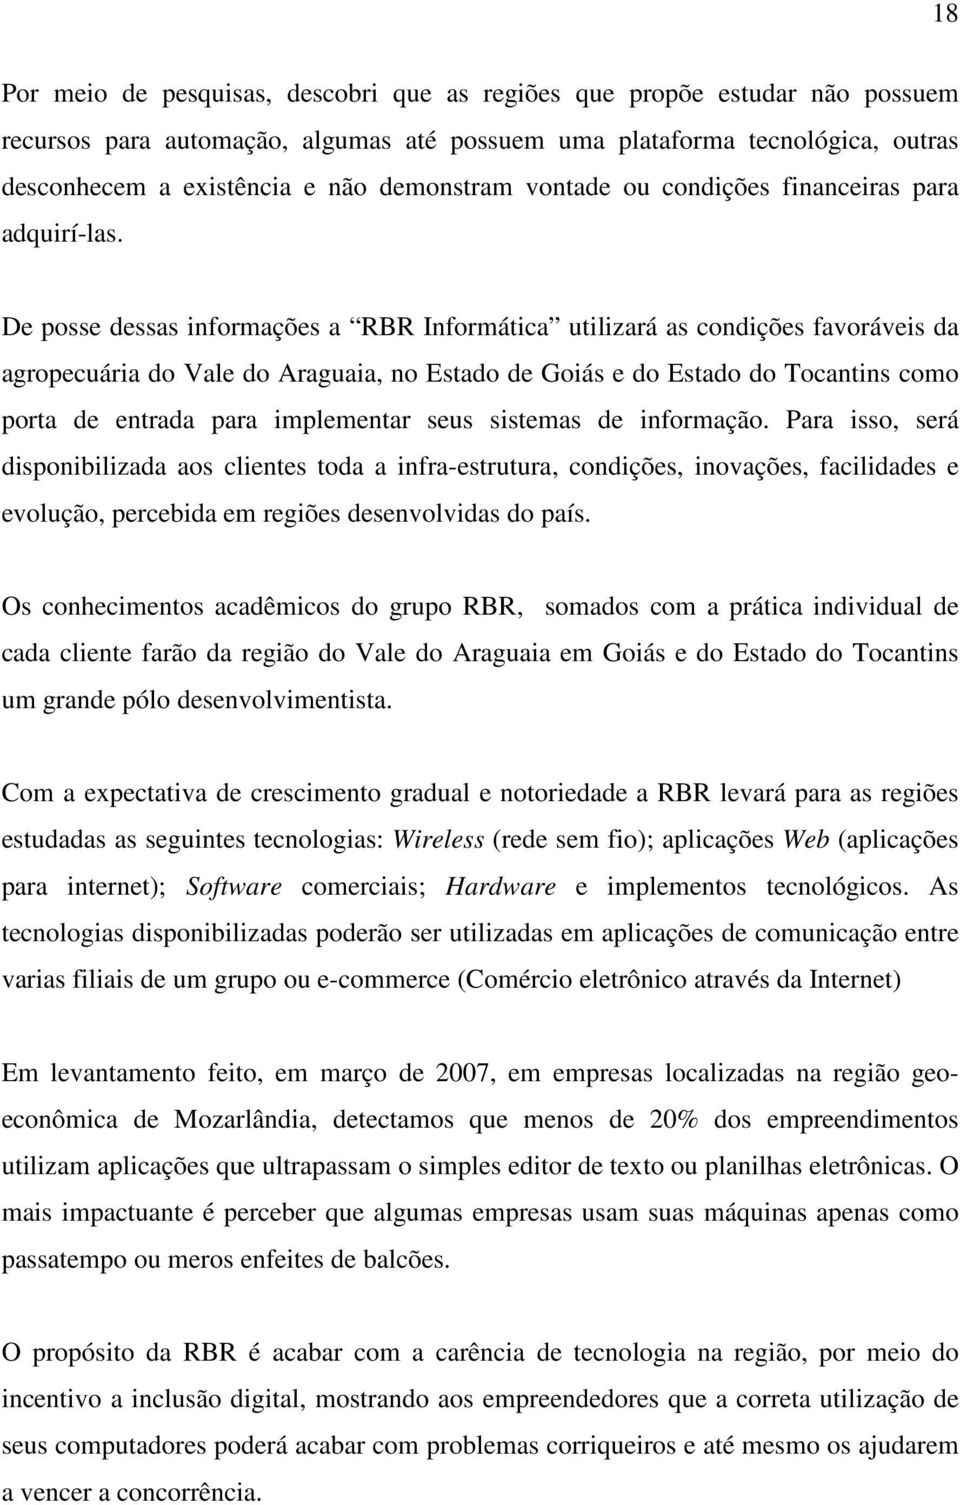 De posse dessas informações a RBR Informática utilizará as condições favoráveis da agropecuária do Vale do Araguaia, no Estado de Goiás e do Estado do Tocantins como porta de entrada para implementar